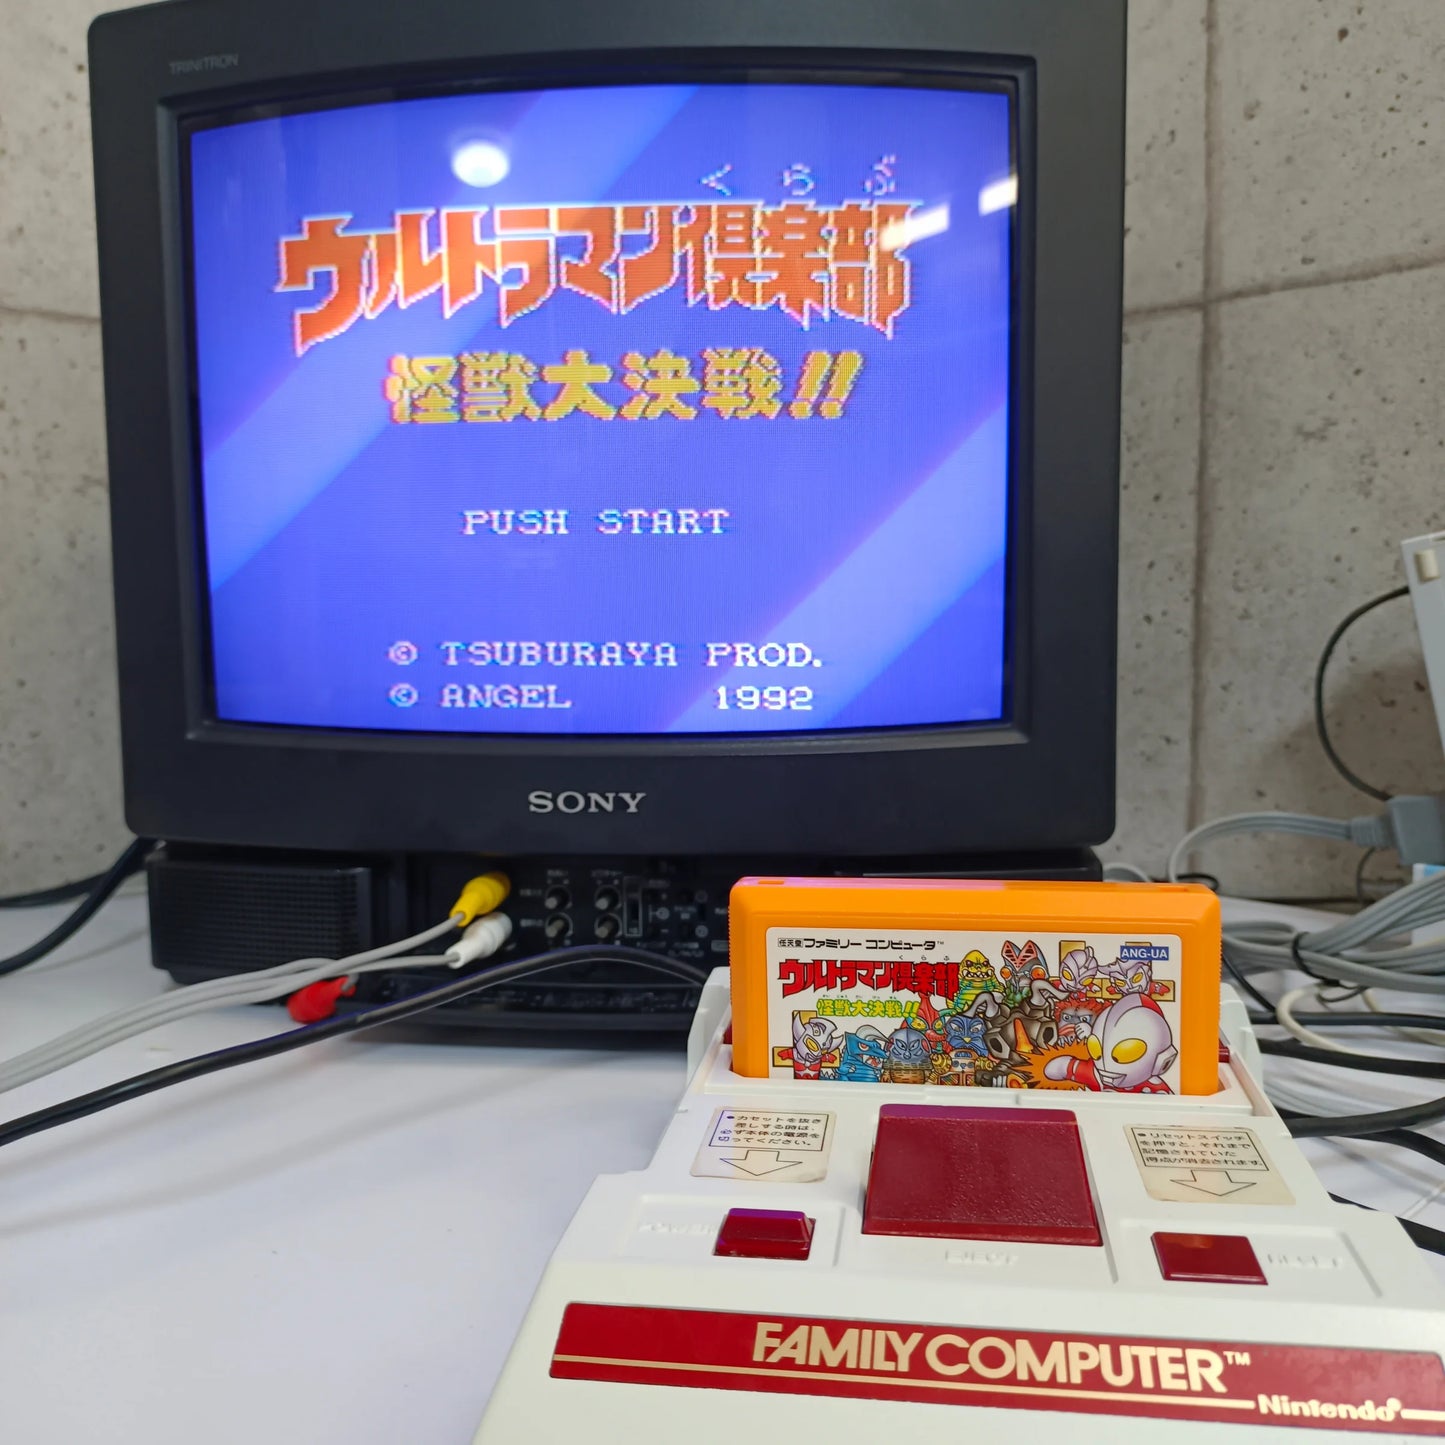 Lot de 3 jeux Famicom